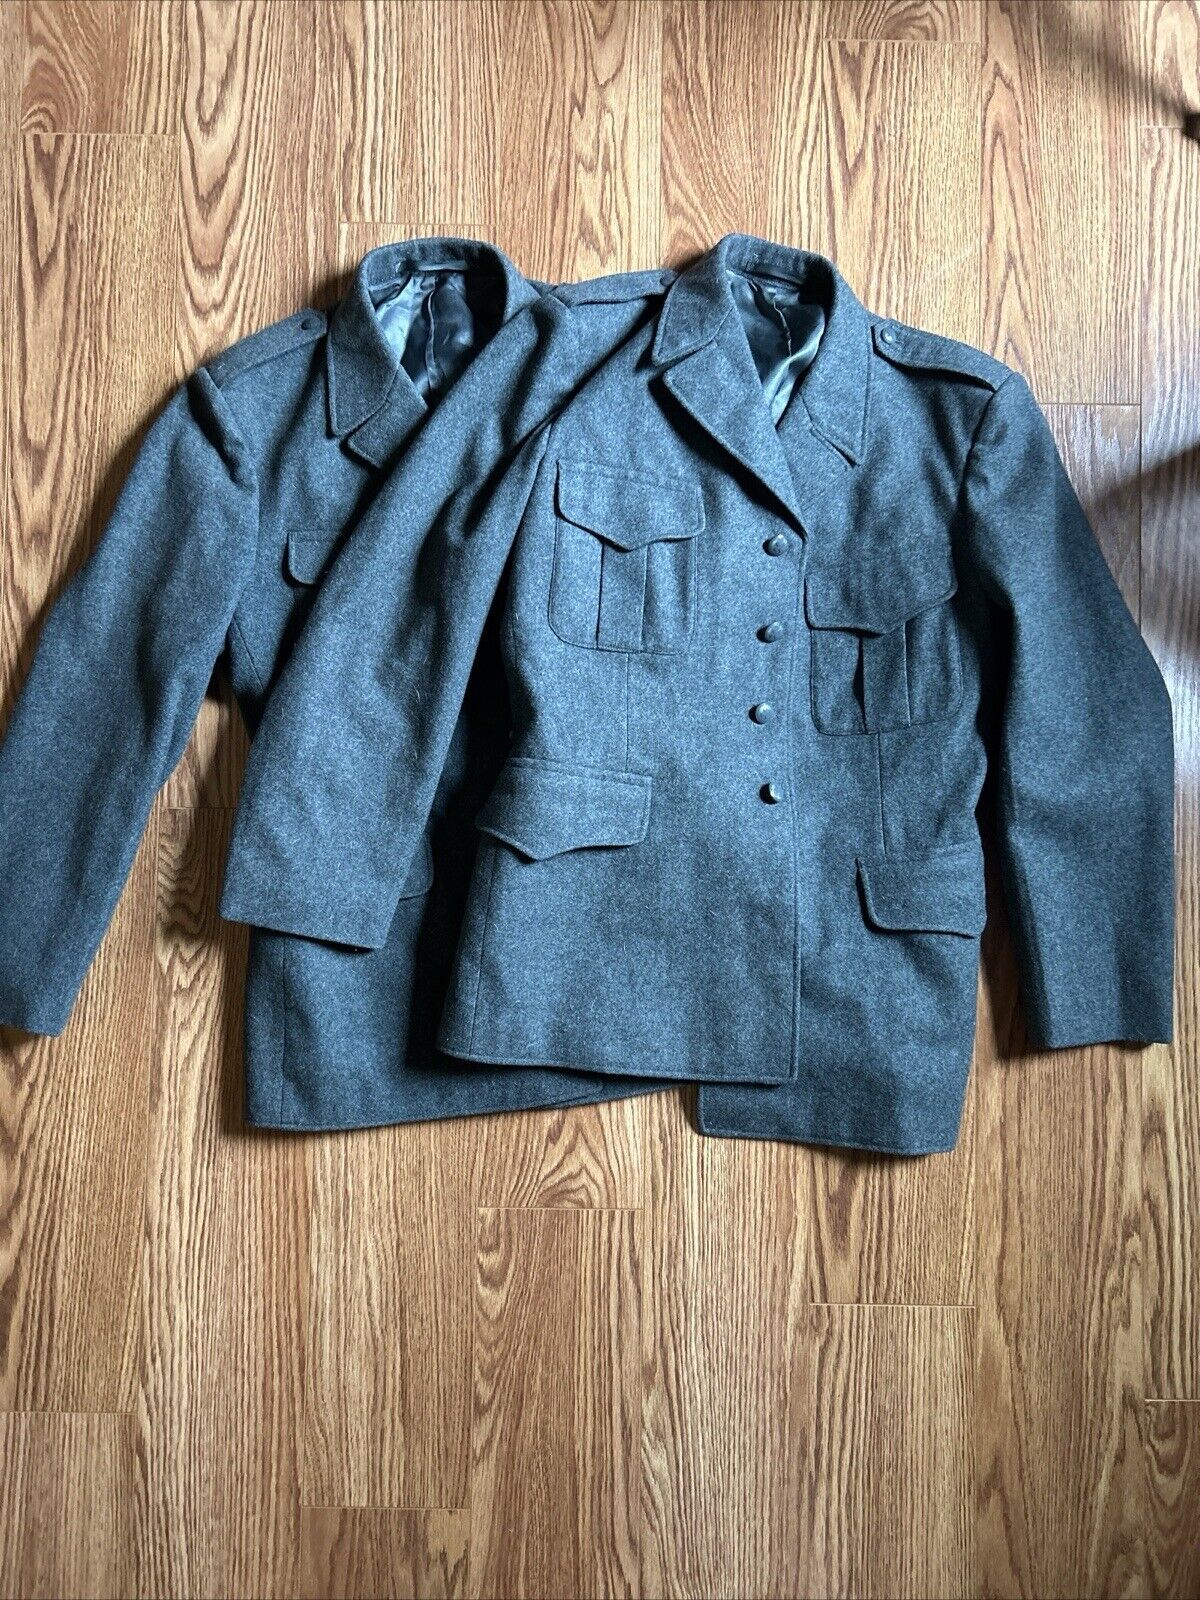 Original WWII 100% Wool Swiss Army Military Jacket